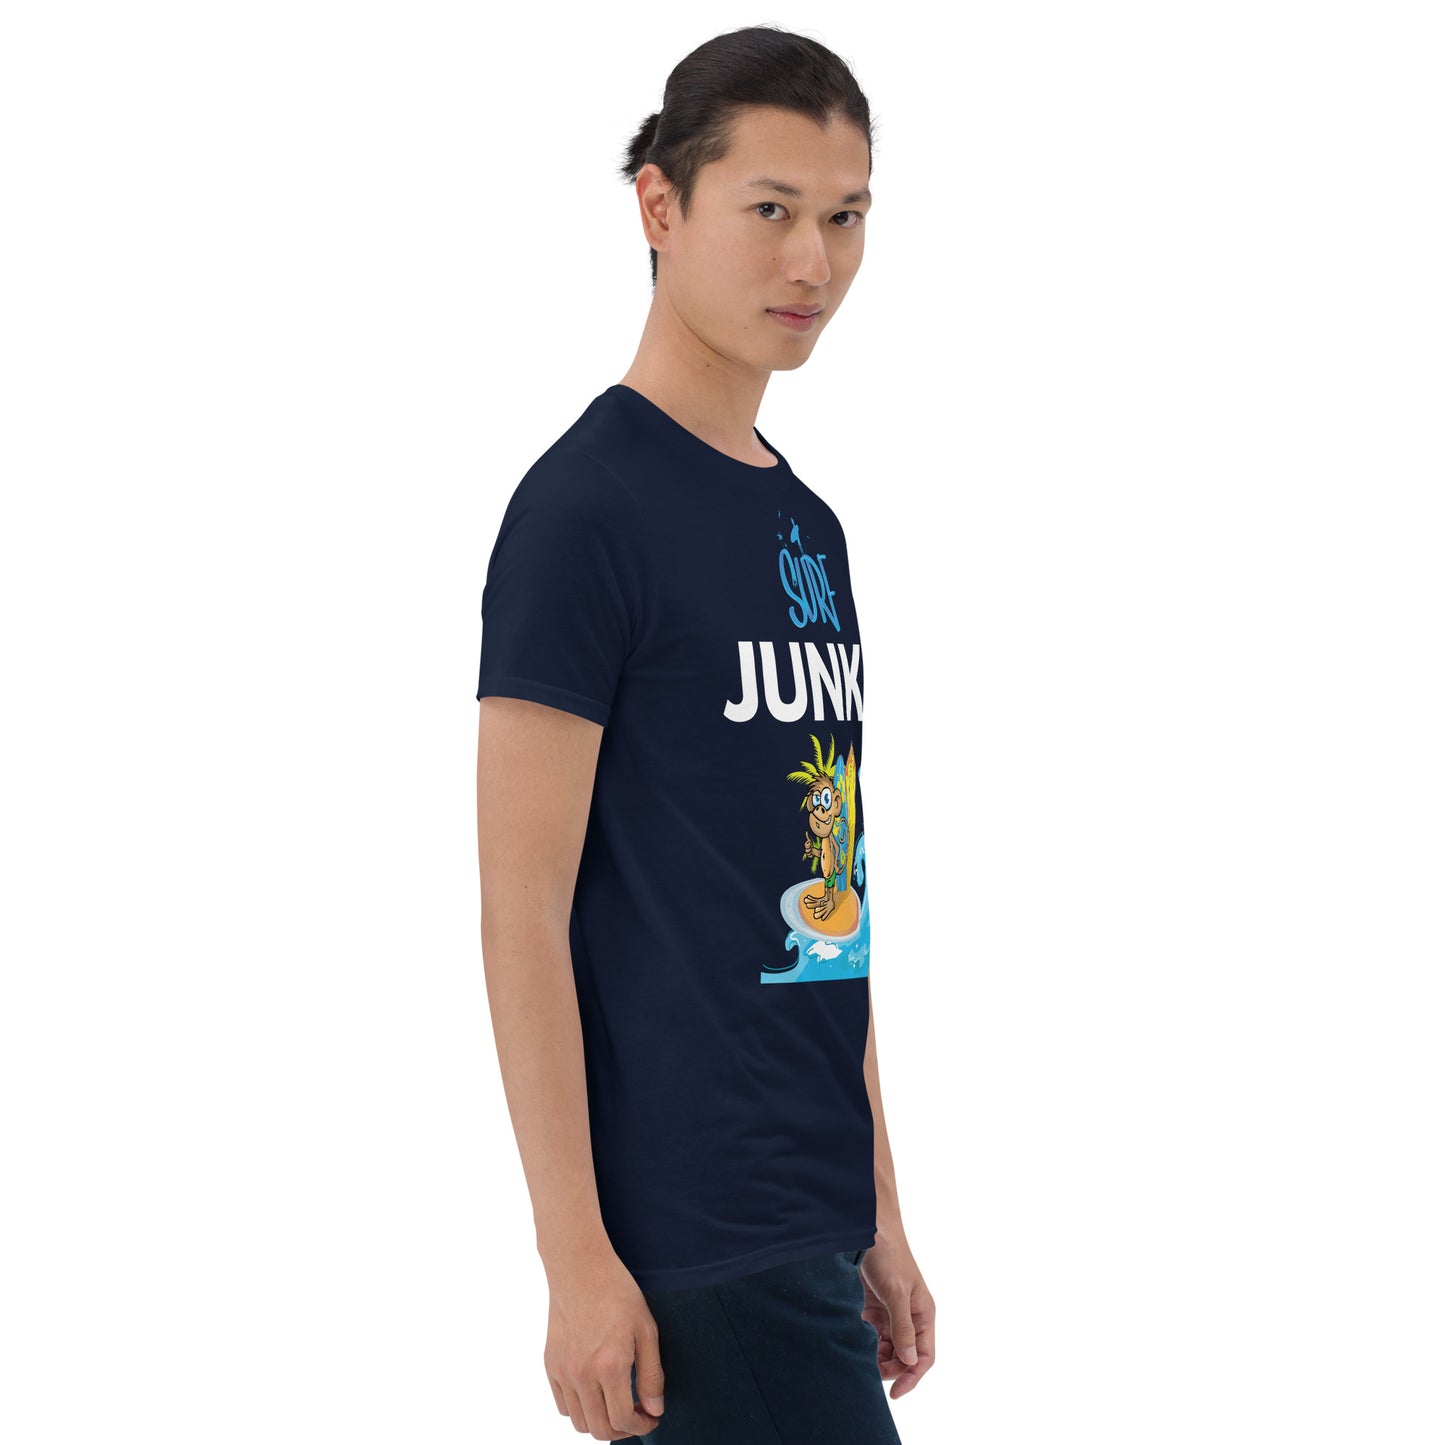 Surf Junkie Monkey Short Sleeve Unisex Softstyle Tee